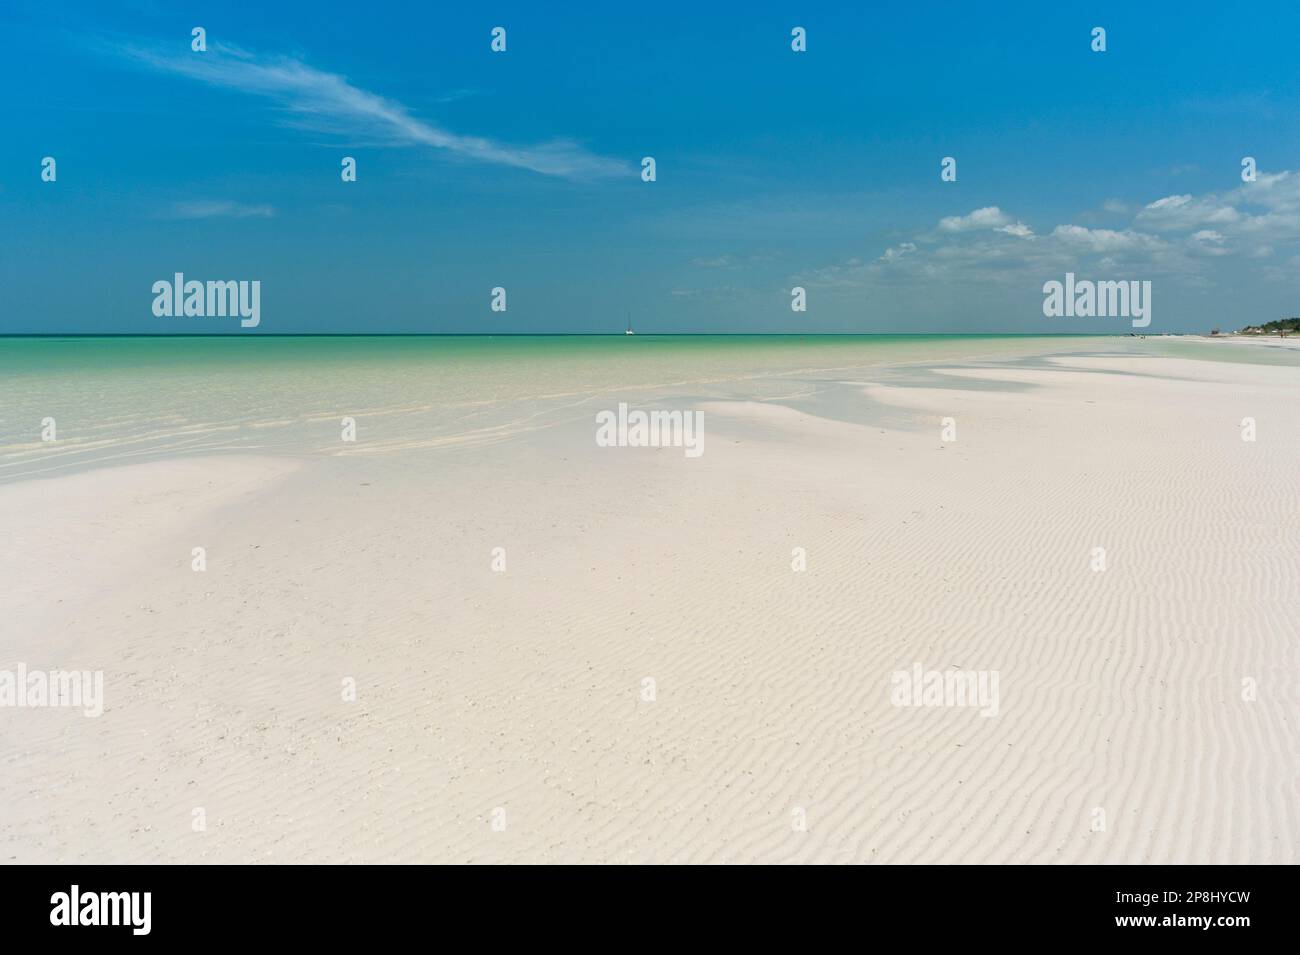 Una vista panoramica di una deserta spiaggia tropicale di sabbia bianca con un cielo blu, perfetto per rilassarsi e ringiovanire. Foto Stock